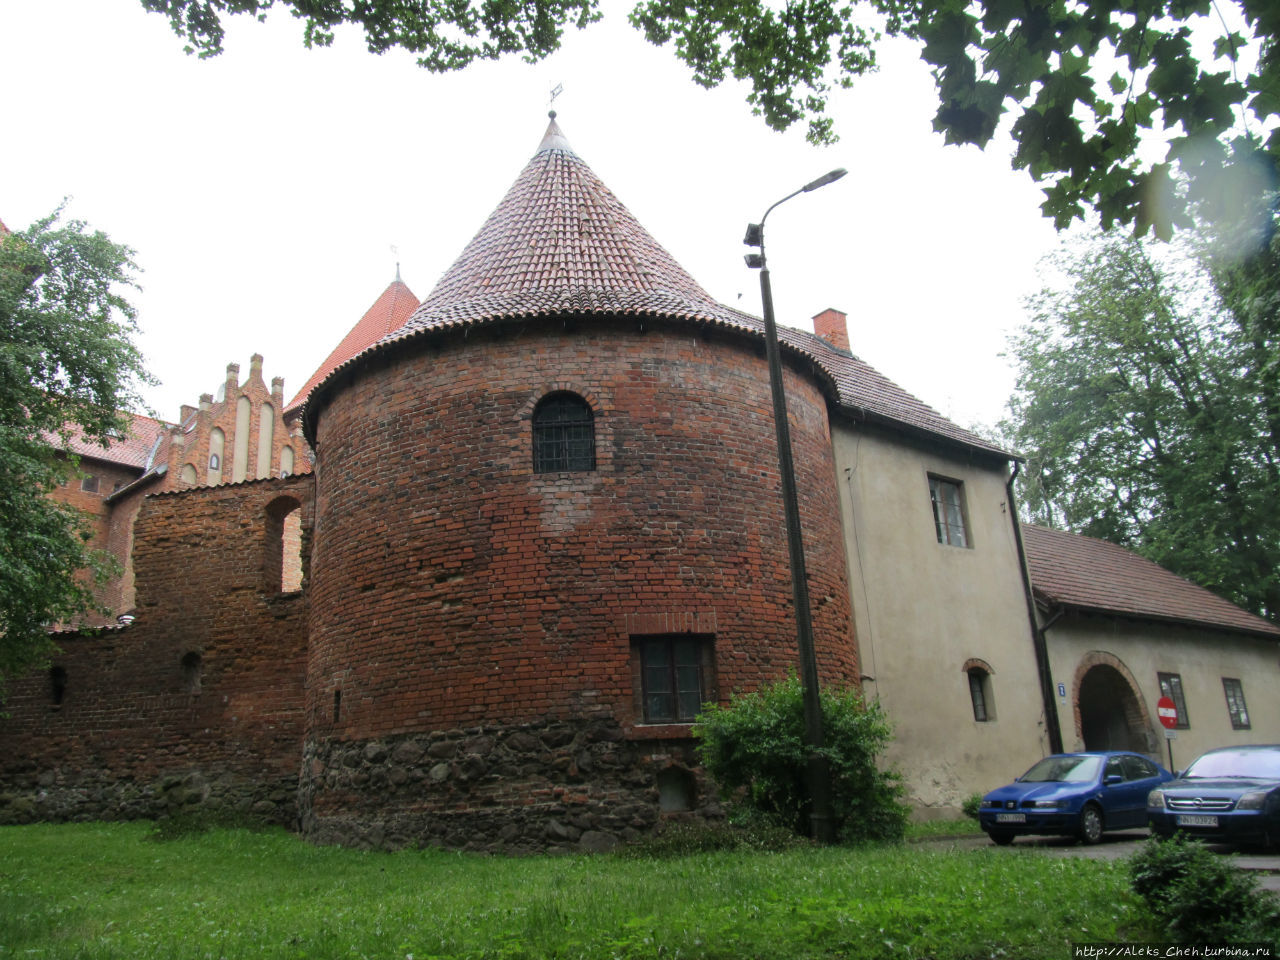 Остатки оборонительных стен замка Нидзица, Польша